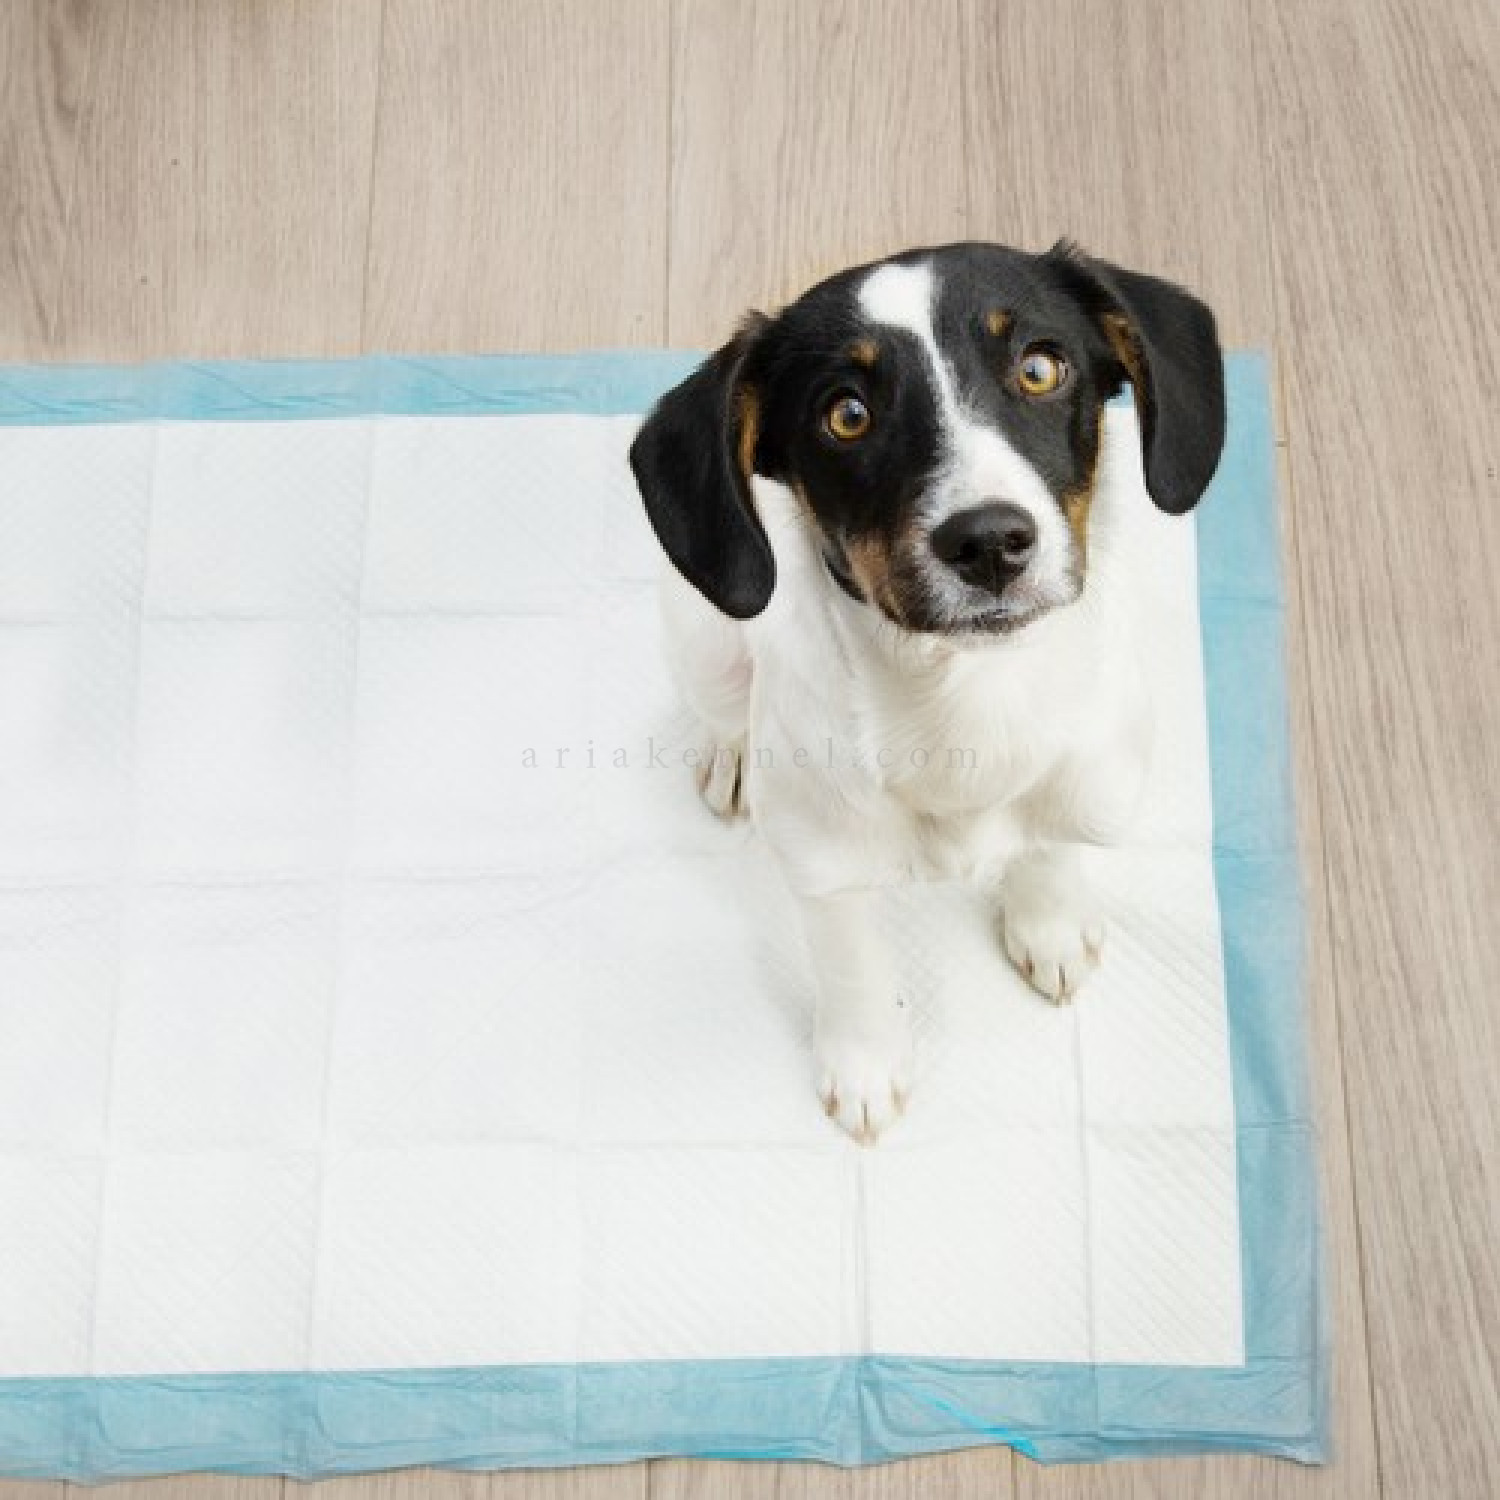 Хигиенни подложки/Пелени за кучета, размер XL, PURLOV